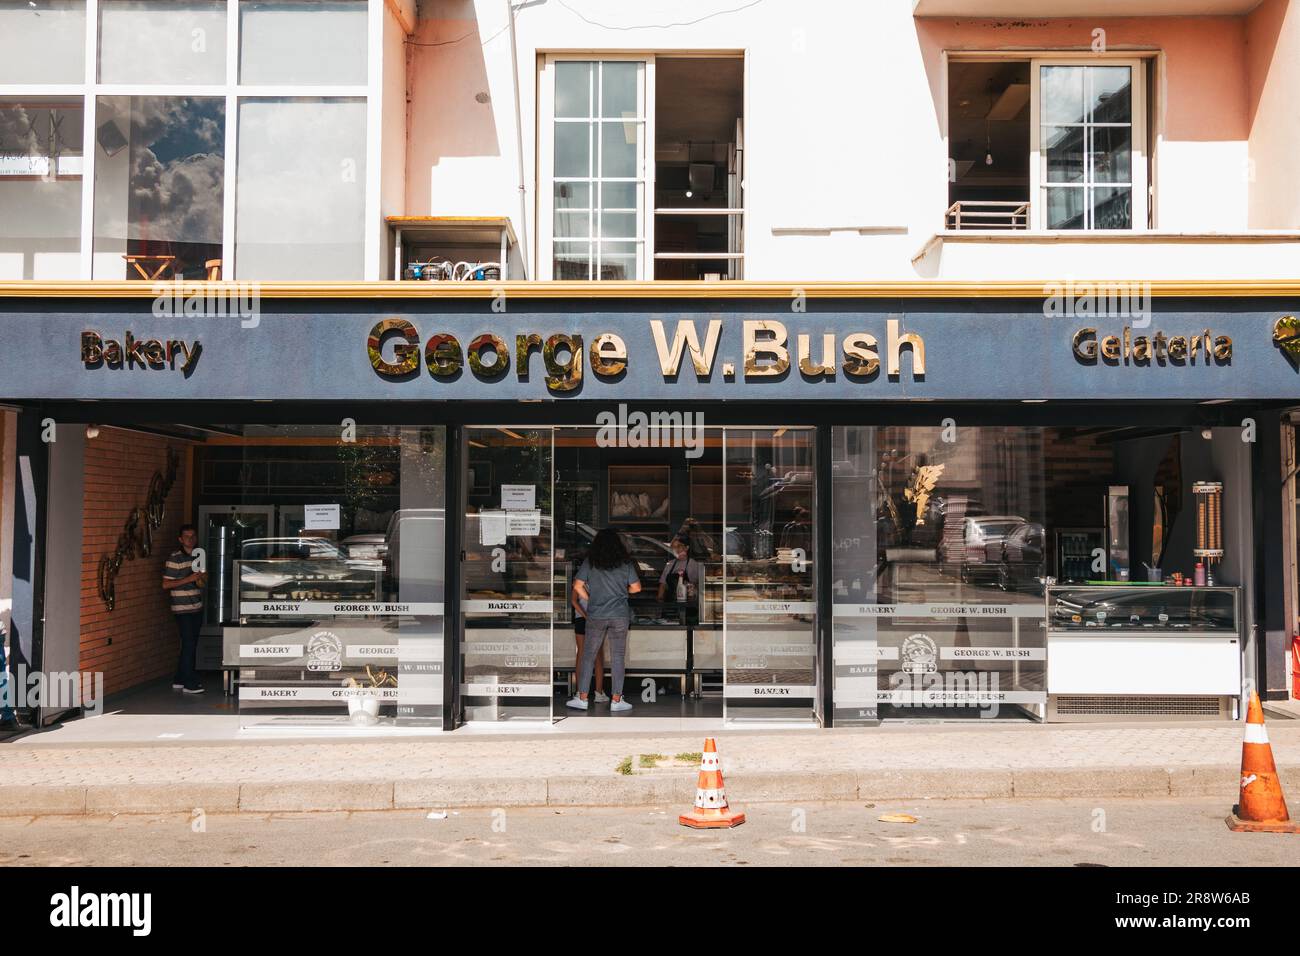 Die Bäckerei George W. Bush in Fushë Krujë, Albanien. Er war der erste US-Präsident, der Albanien nach dem Kommunismus besuchte und in dieser kleinen Stadt vorbeischaute Stockfoto